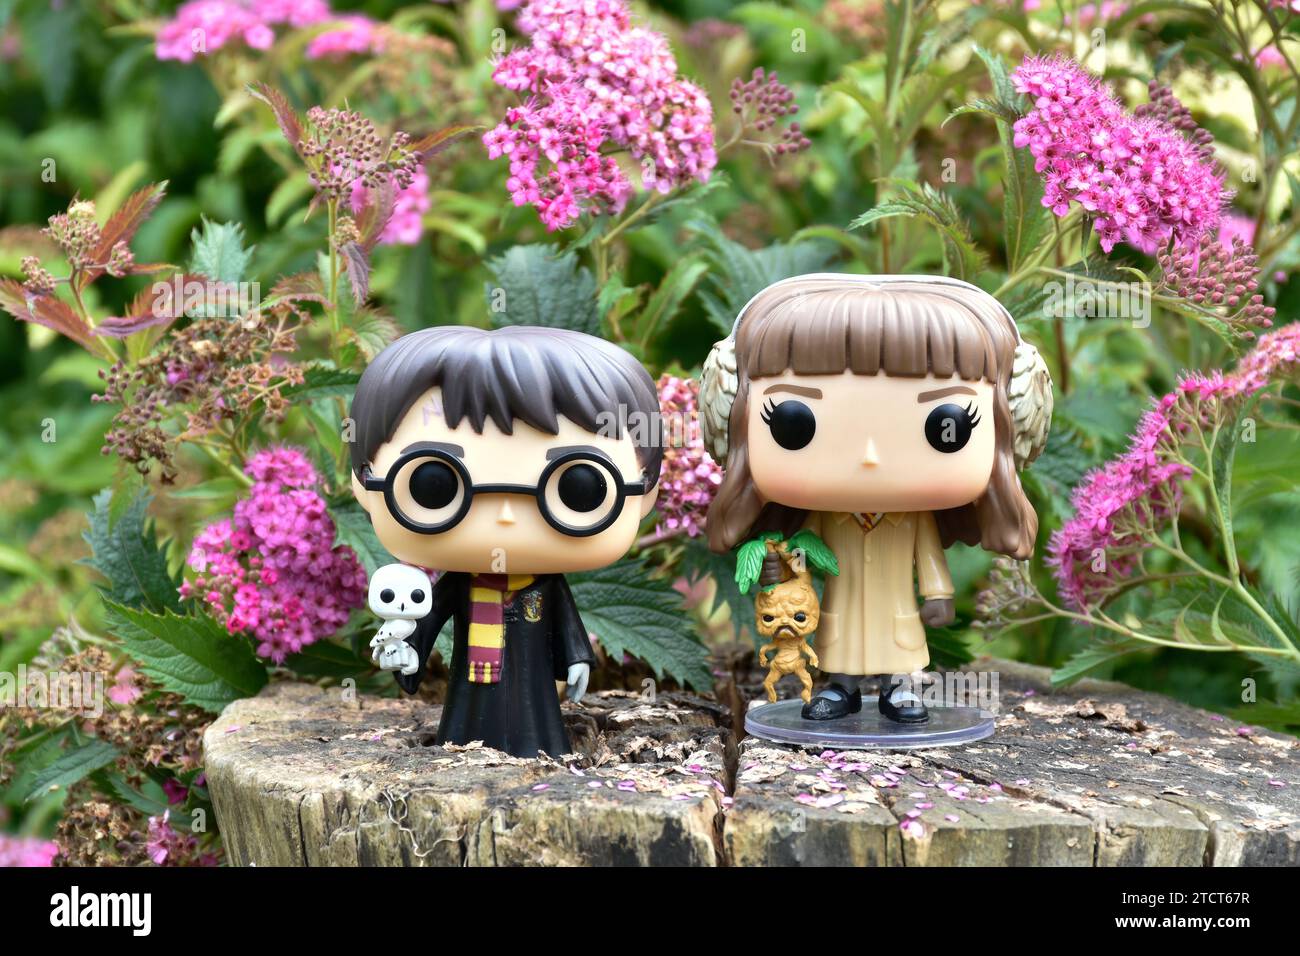 Funko Pop Actionfiguren von Harry Potter und Hermine Granger. Rosa Blumen, Waldlichtung, magische Wälder, Zauberwelt, Freundschaft. Stockfoto